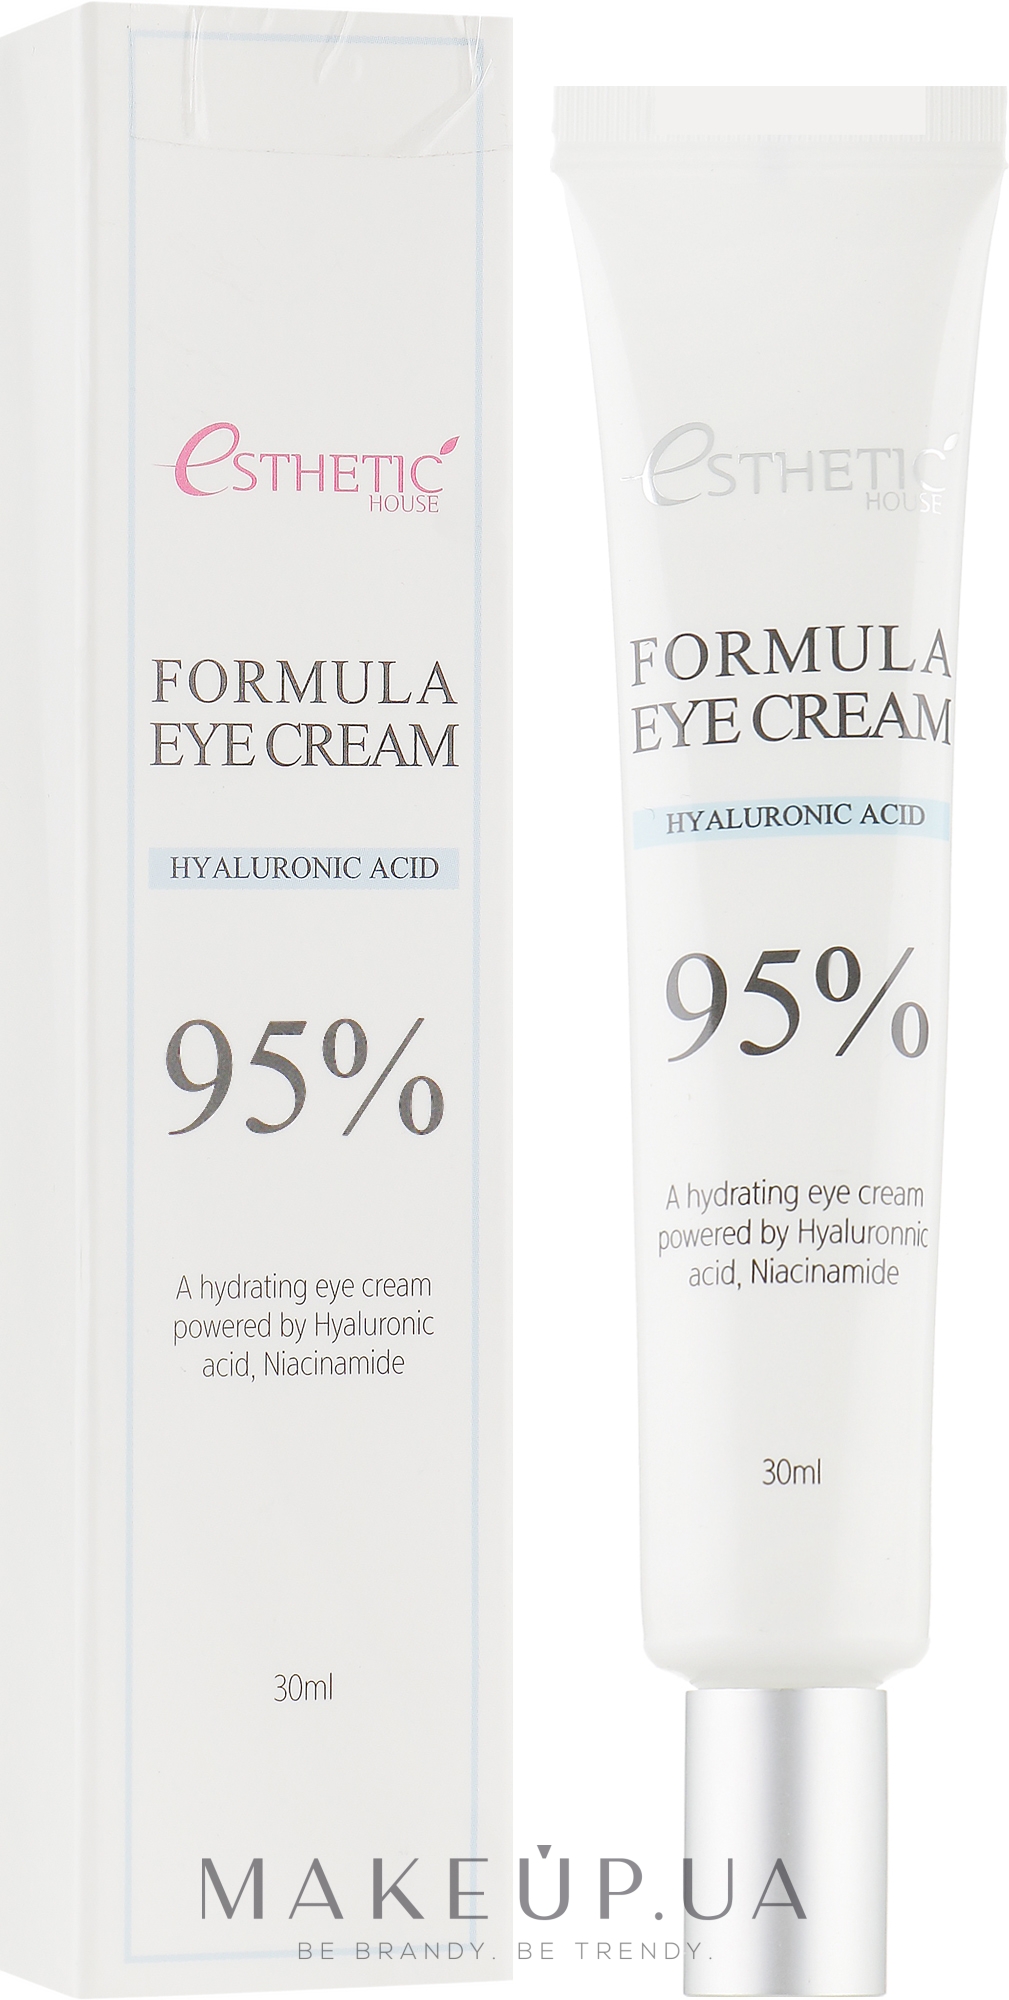 Увлажняющий крем для кожи вокруг глаз с гиалуроновой кислотой и ниацинамидом - Esthetic House Formula Eye Cream Hyaluronic Acid 95% — фото 30ml